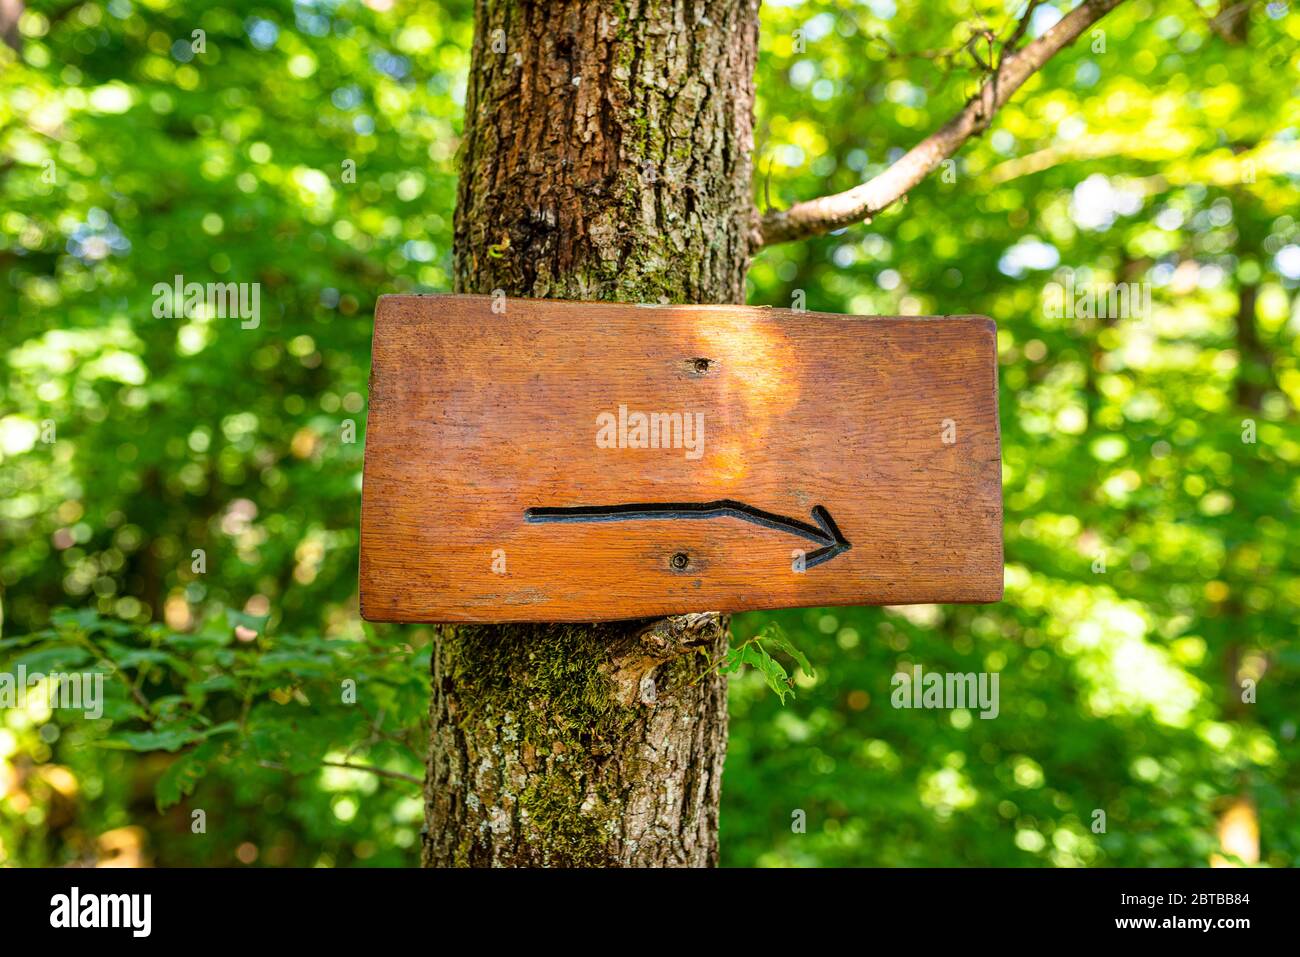 Un cartello in legno vuoto con una freccia destra incisa inchiodata ad un albero nella foresta con colori verdi sullo sfondo. Foto Stock